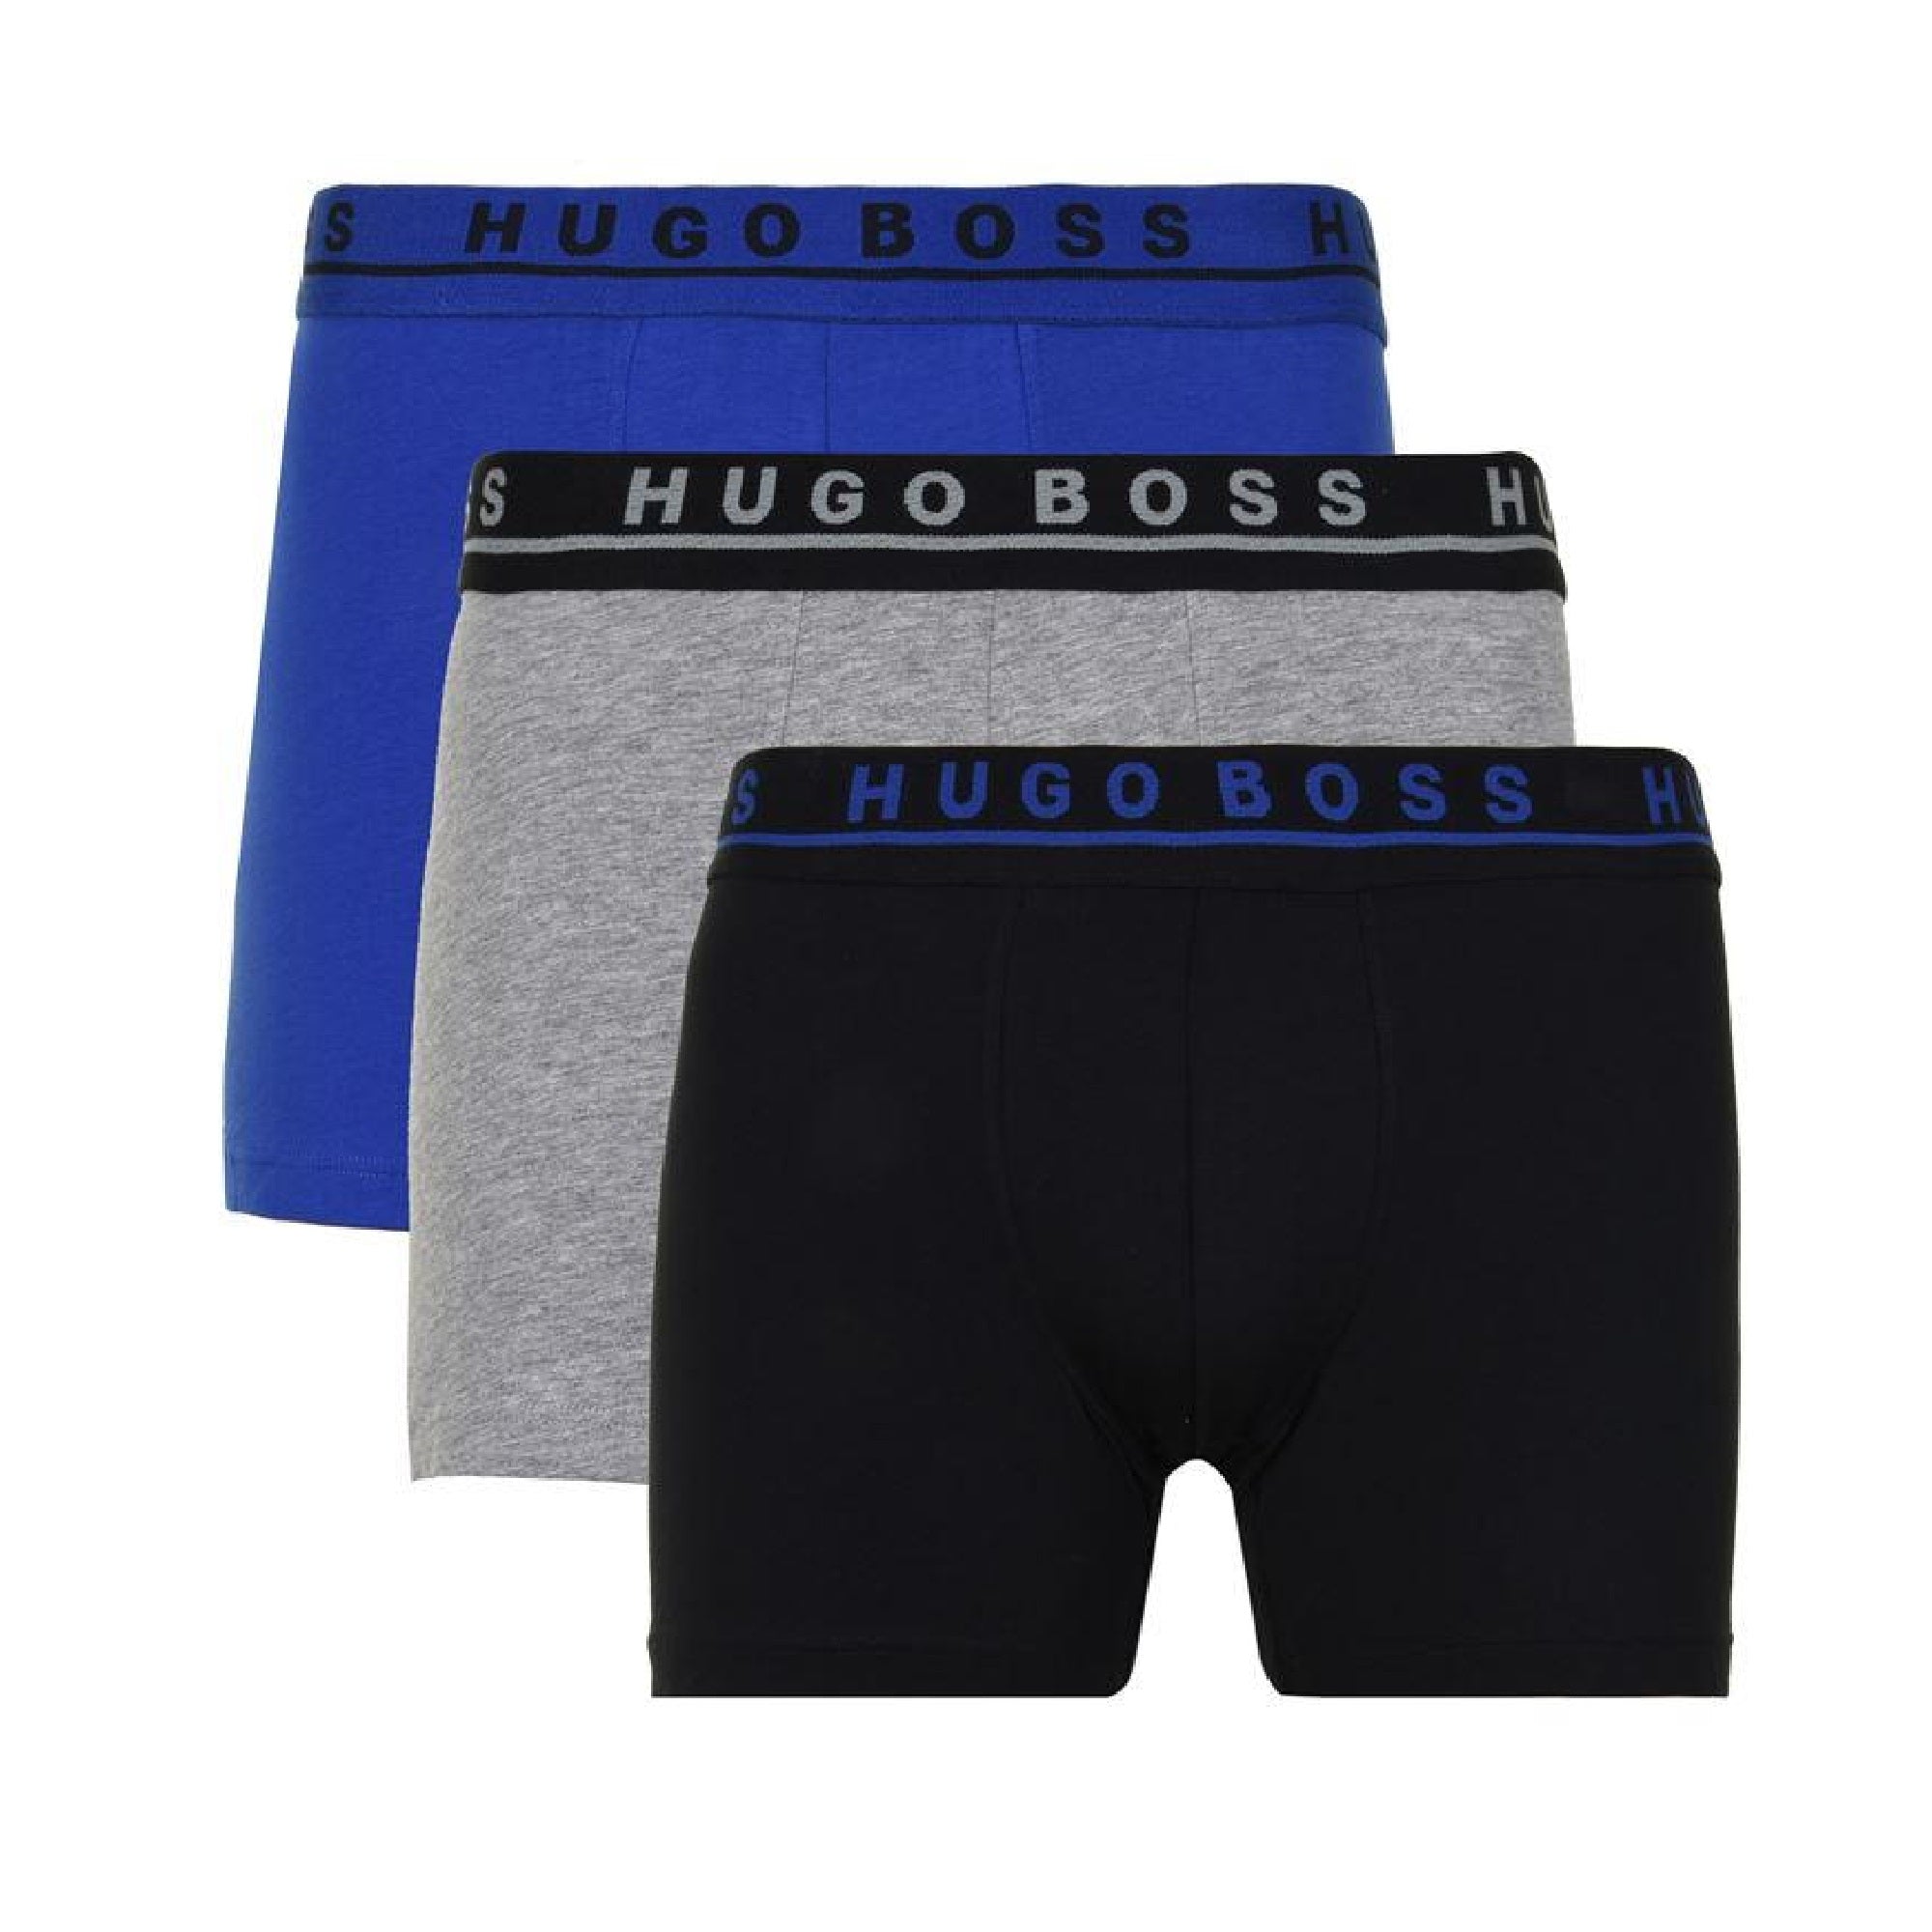 hugo boss boxer briefs 3 pack